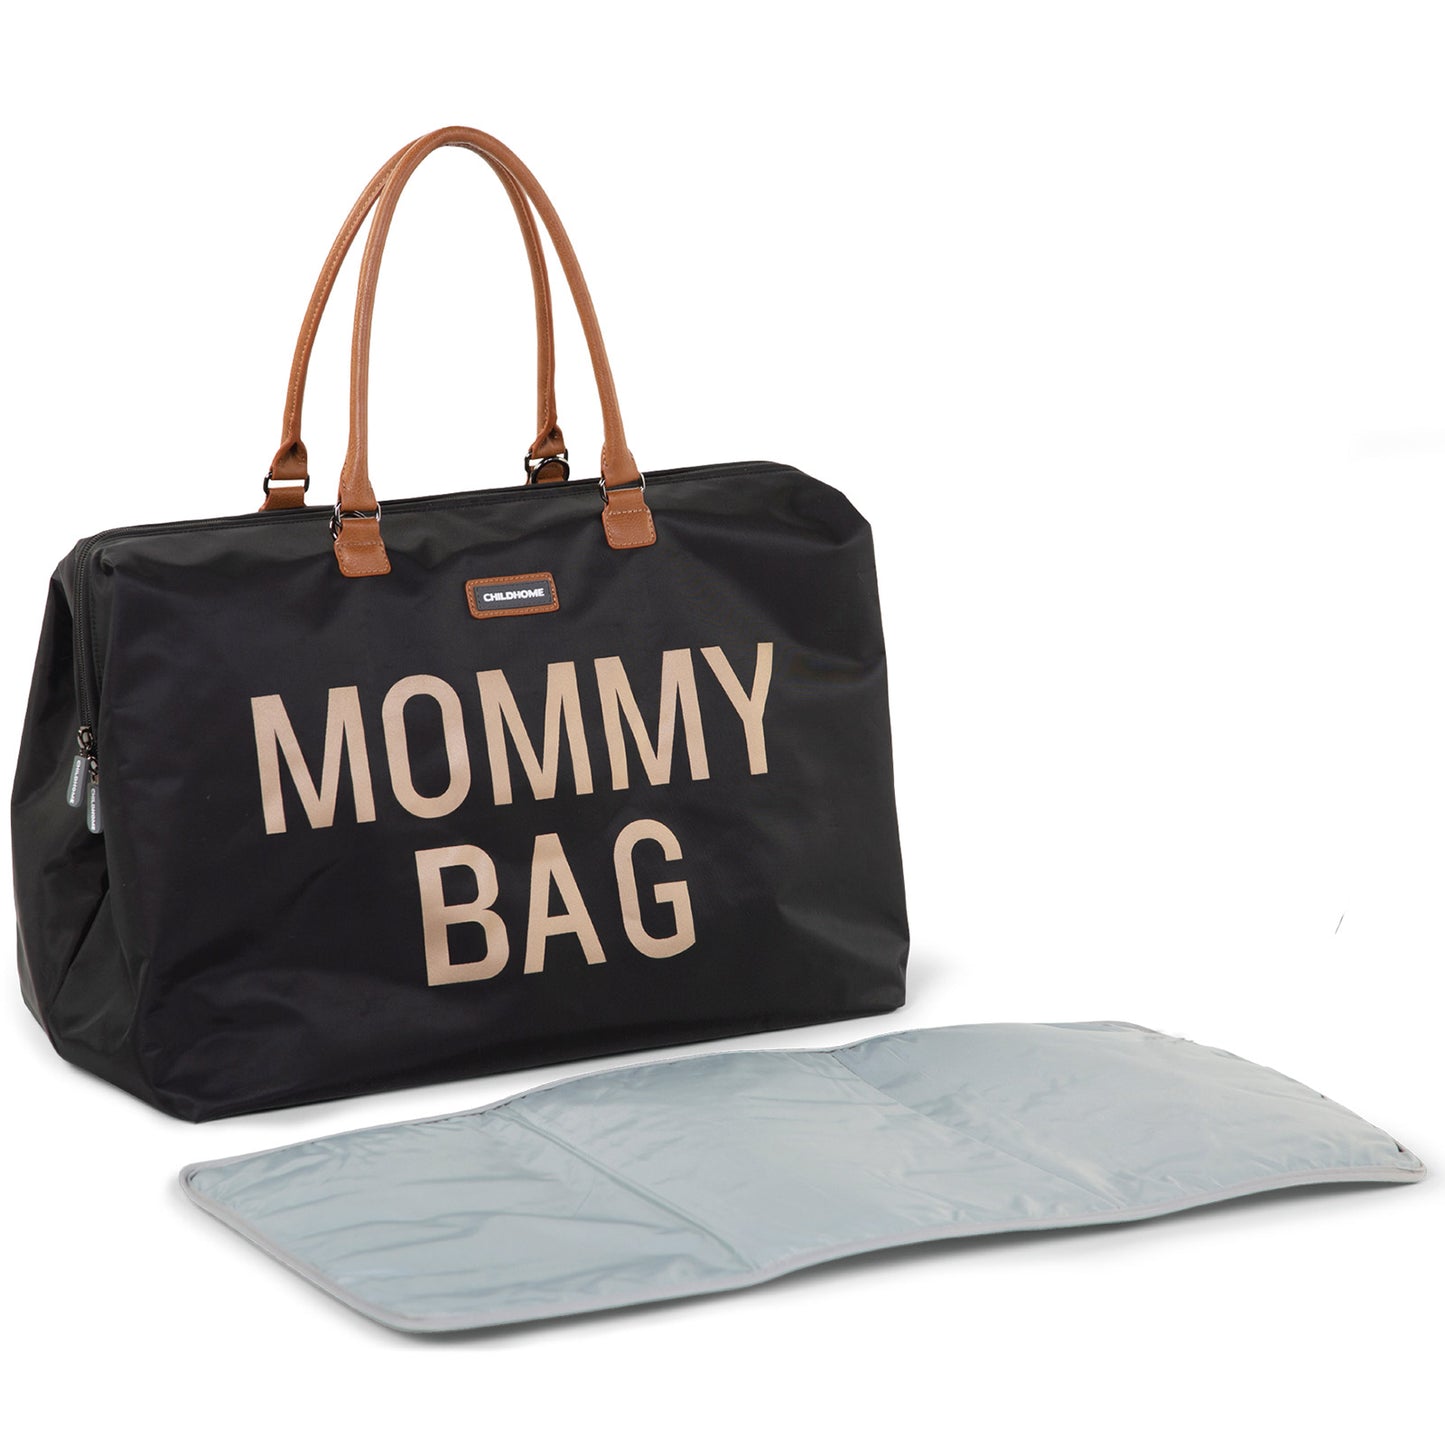 Sac à langer "Mommy Bag" (noir / or)